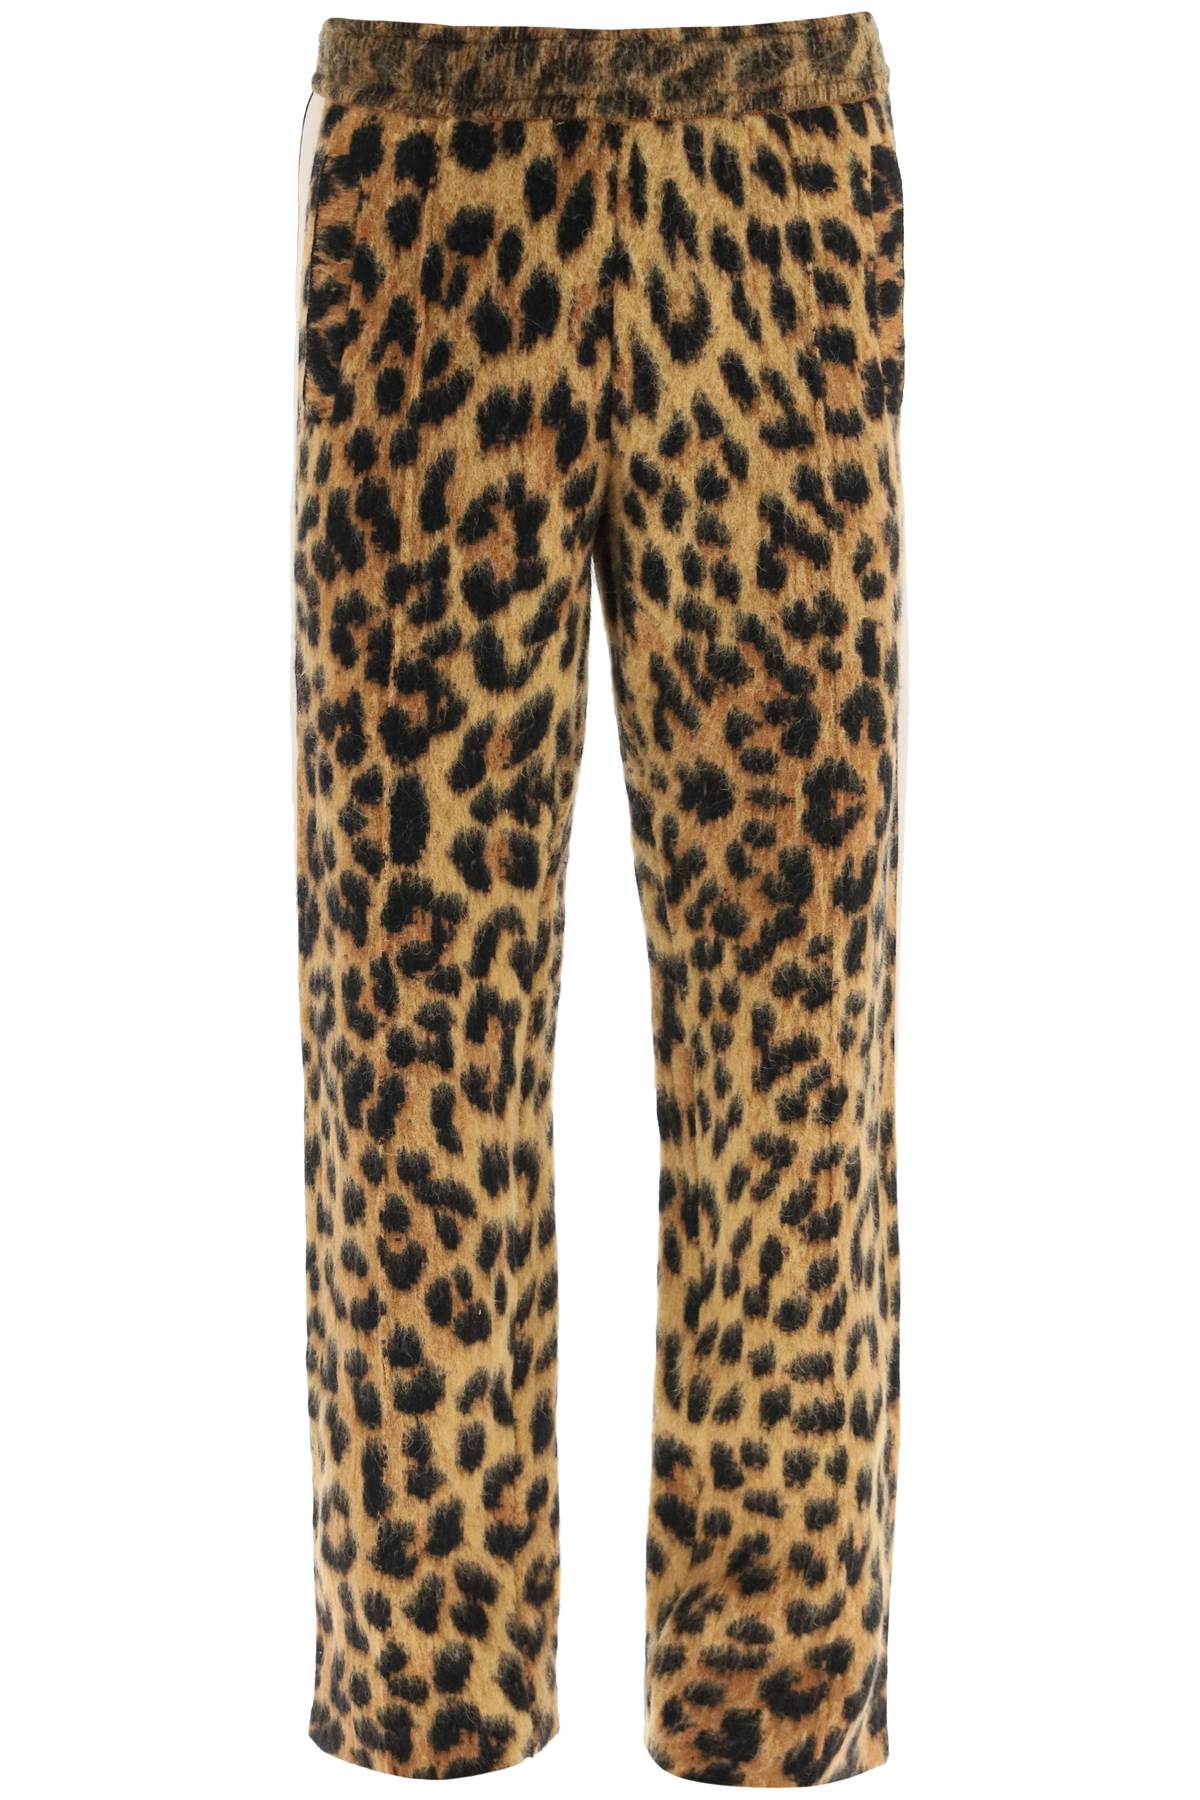 Palm Angels Leopard Jacquard Knit Pants